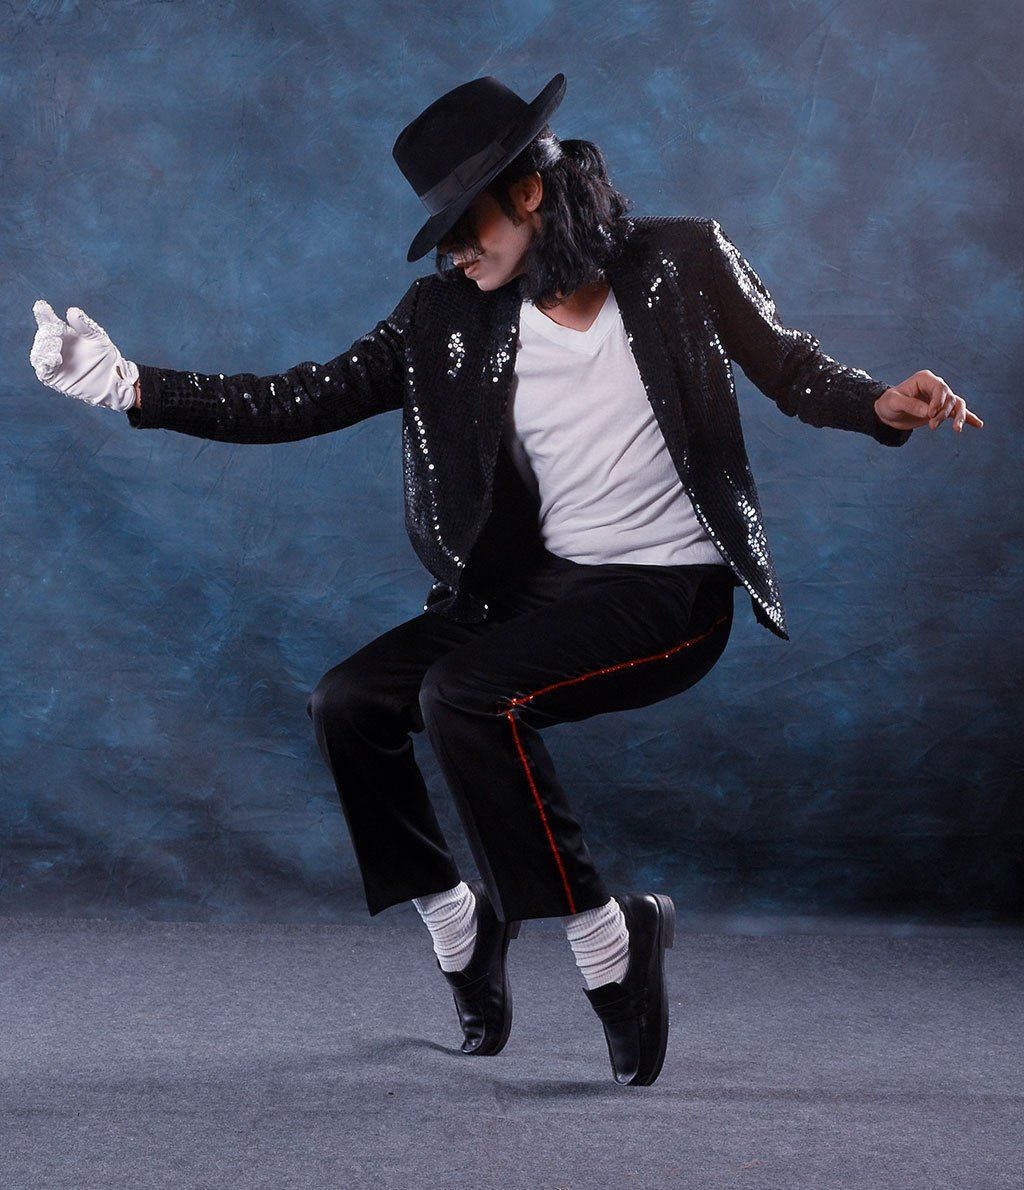 Tư liệu 2 - Moonwalk của ông hoàng nhạc POP trở thành 1 trong những biểu tượng của văn hóa đại chúng (nguồn BTN)